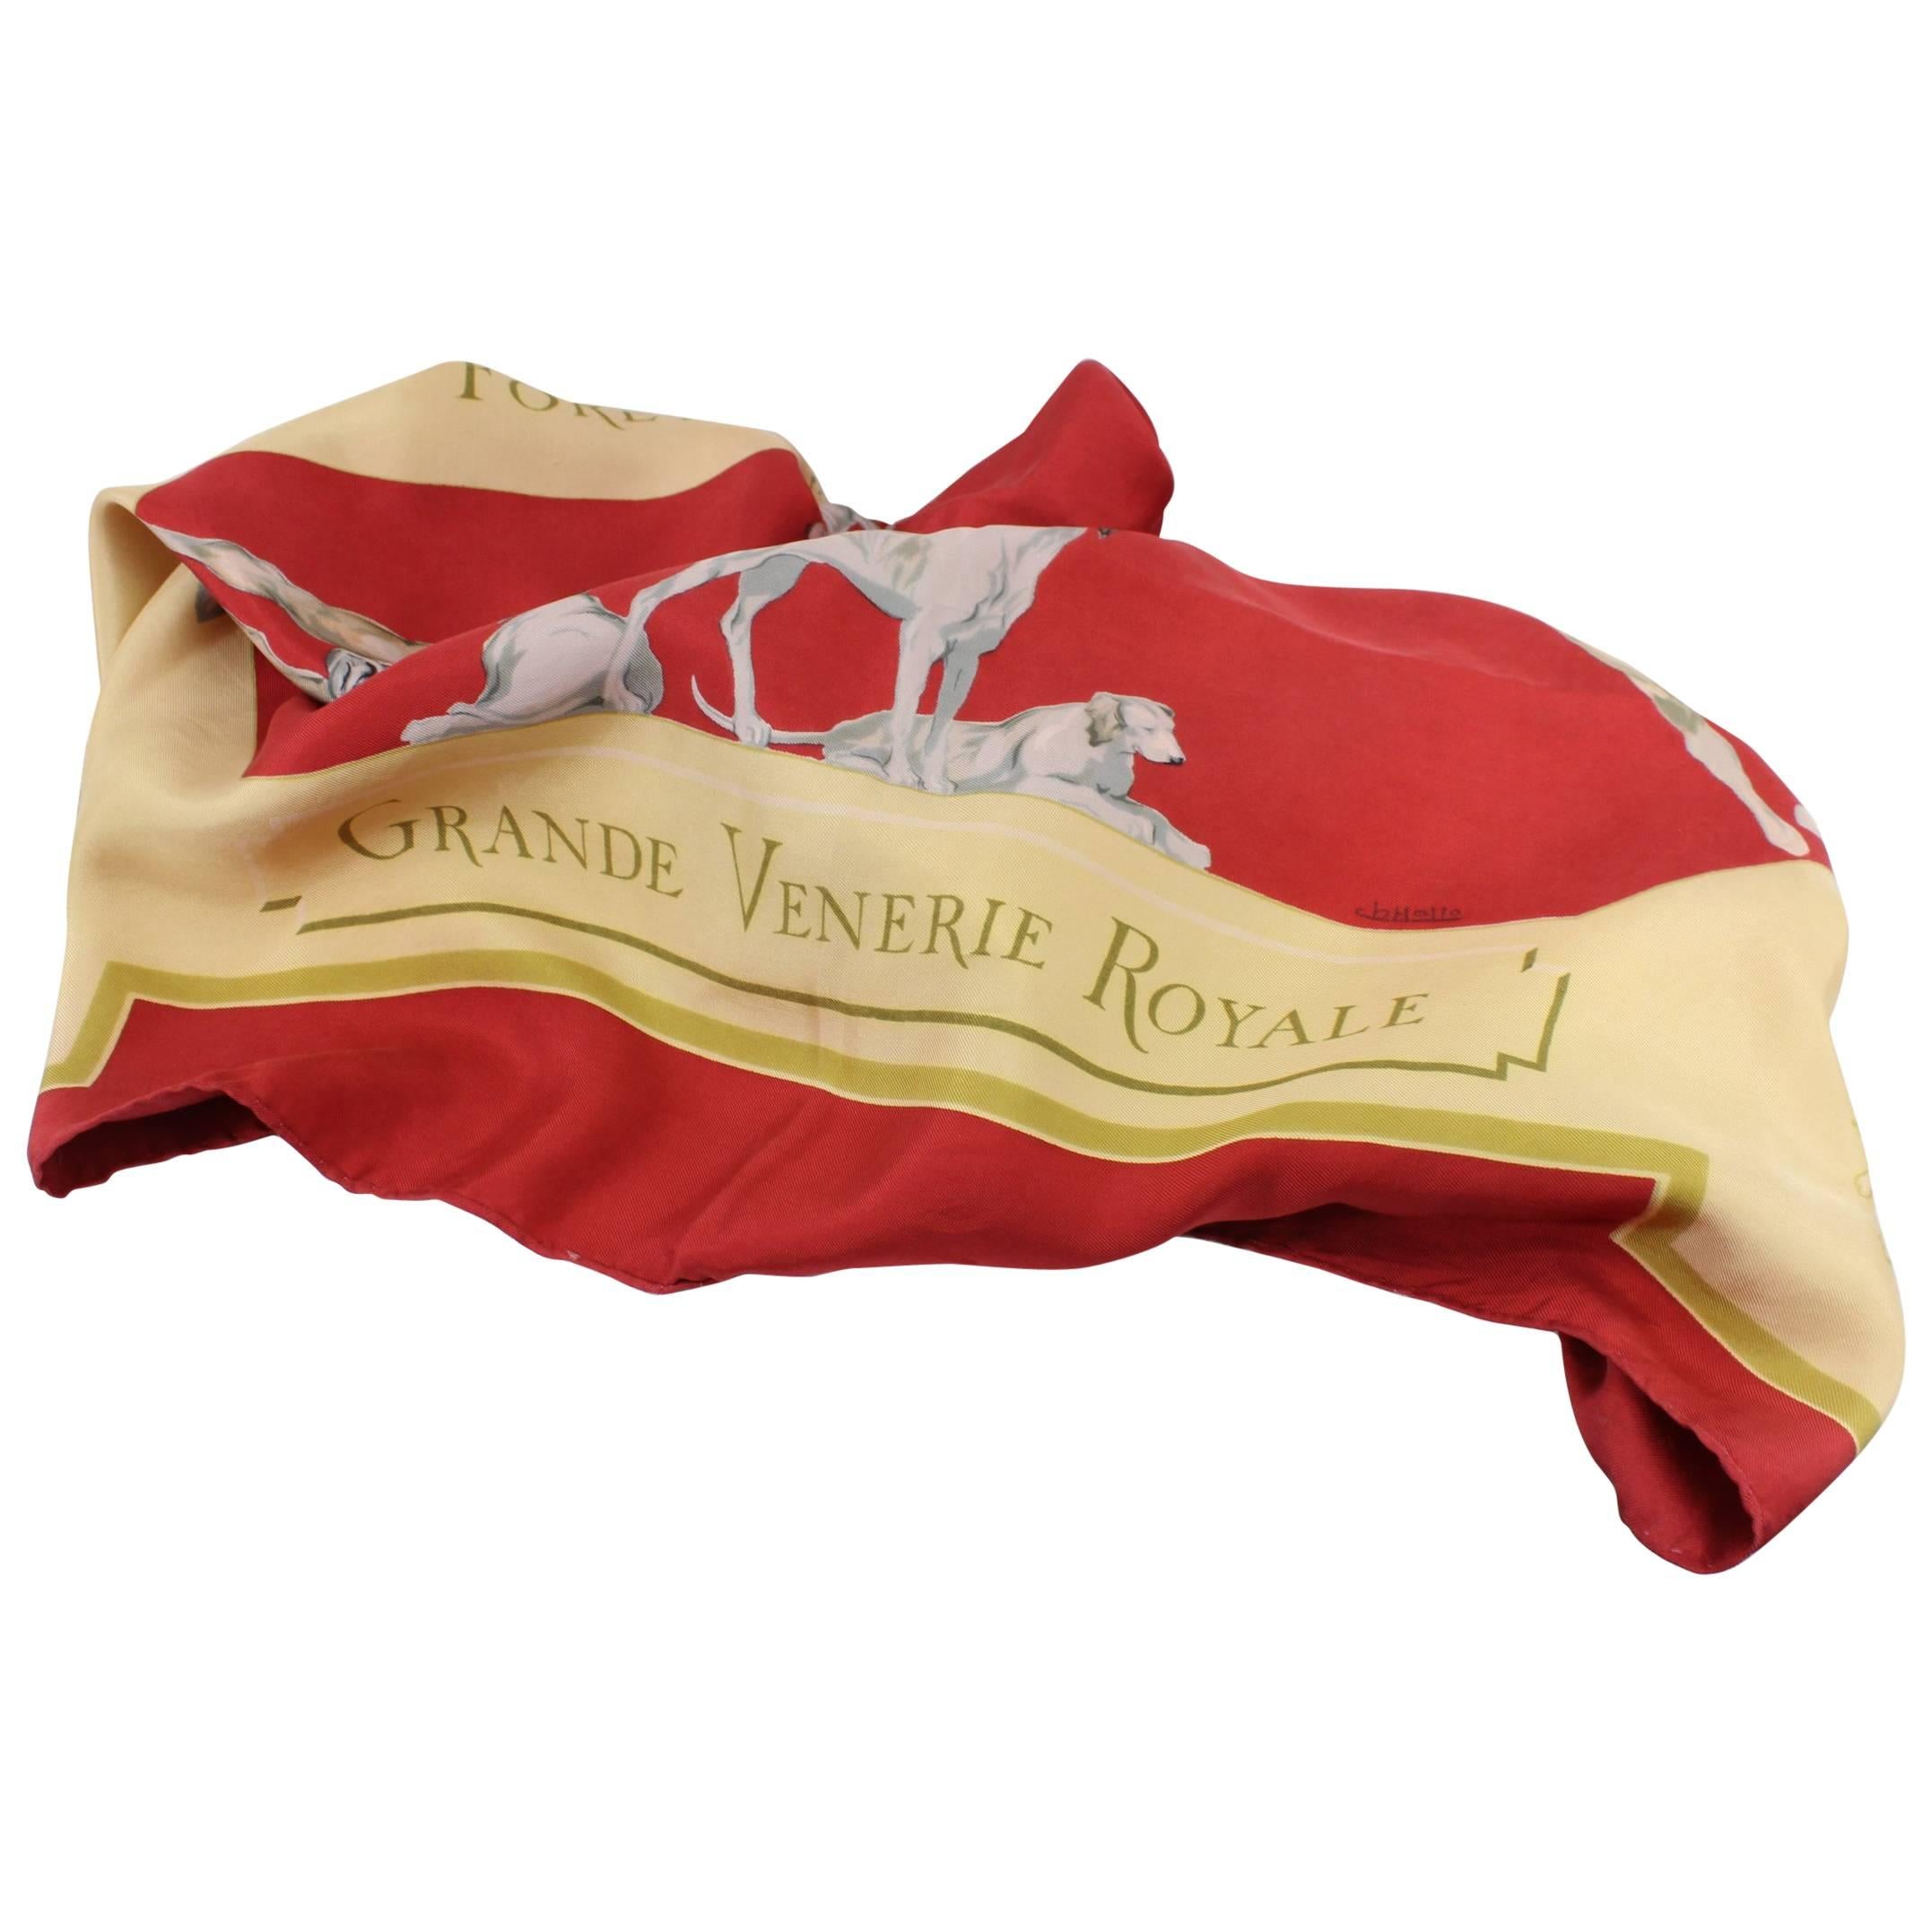 Hermes "Grande venerie Royal" Vintage Silk Scarf